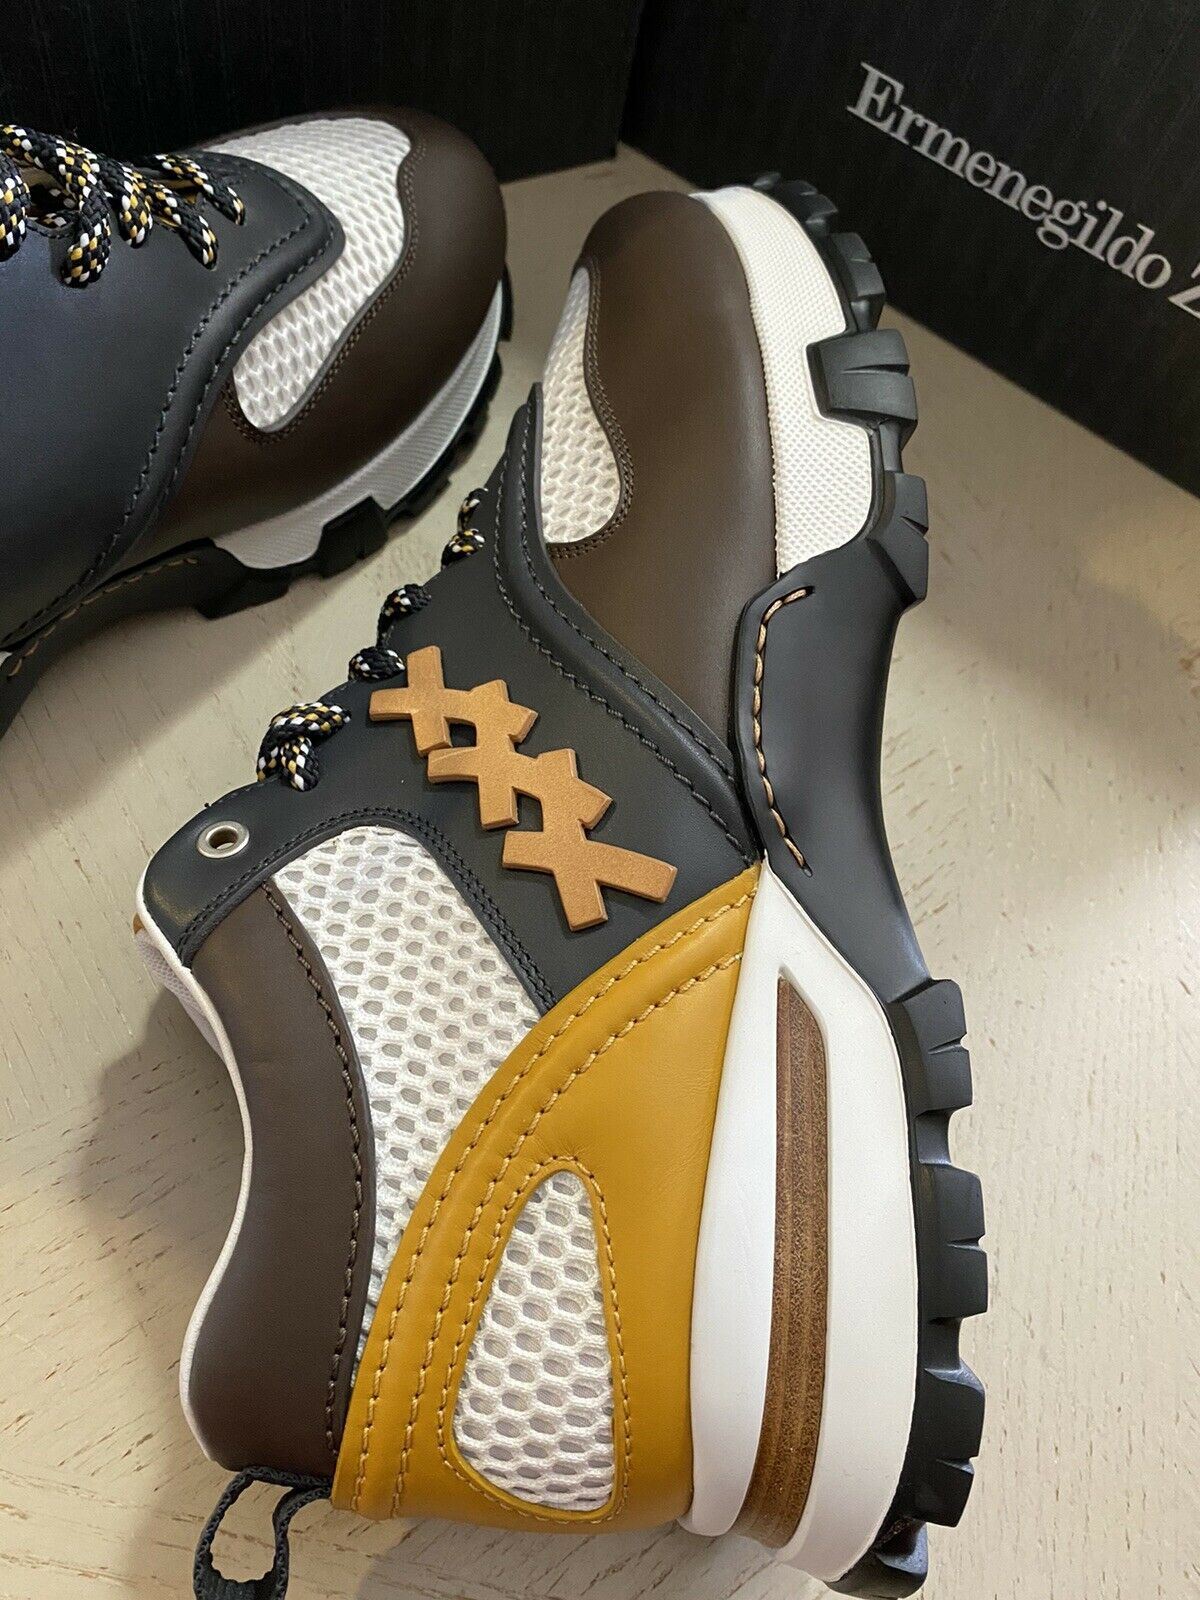 Neue 650 $ Ermenegildo Zegna Couture Leder-Sneakers Schuhe DK Braun 13 US Italien